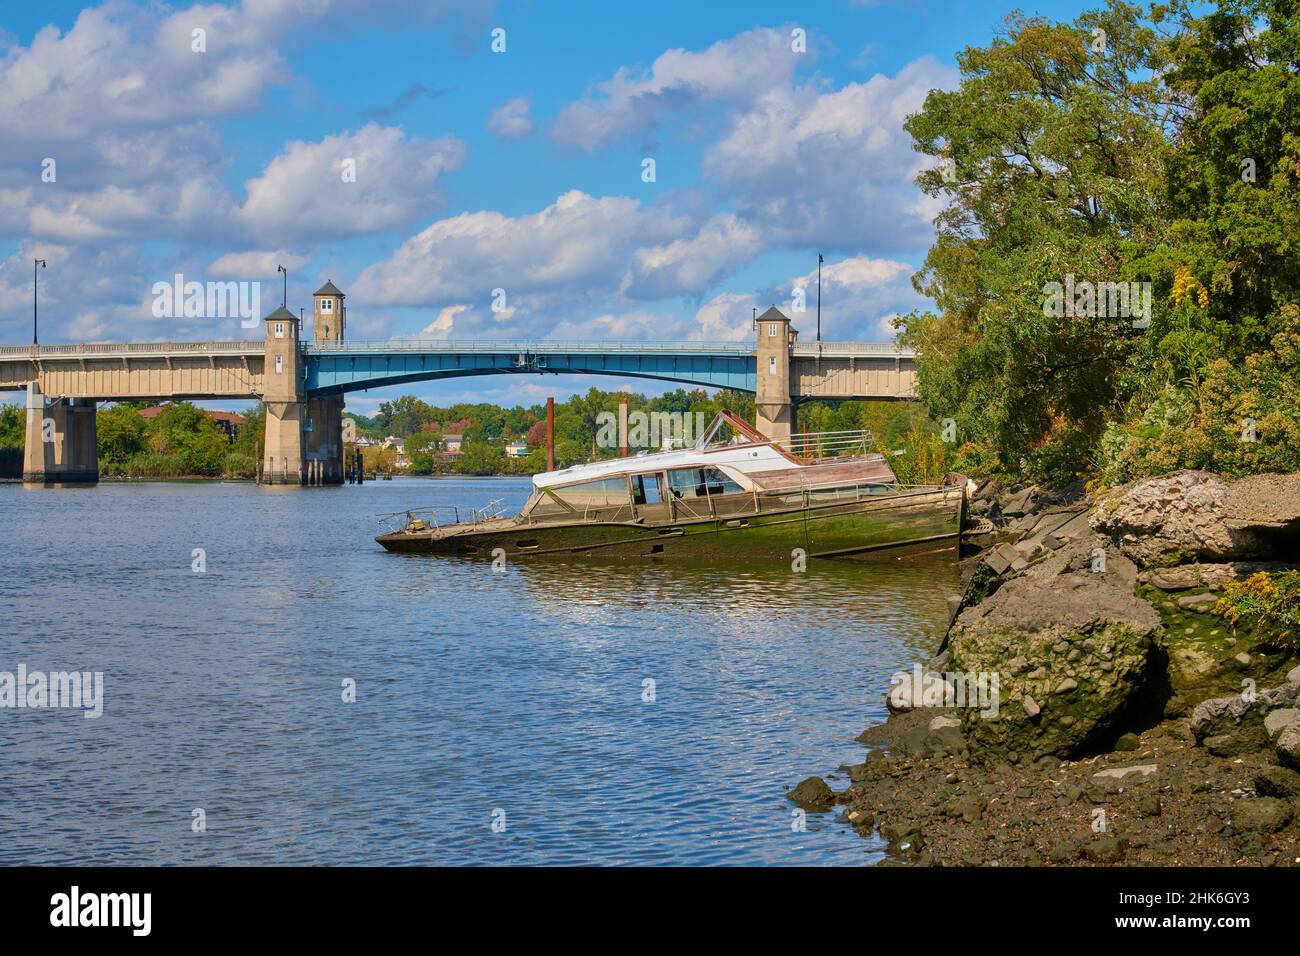 Barca a vela d'epoca a terra a metà. Sulle rive del fiume Hackensack nel New Jersey, USA. Guardando verso nord verso il ponte levatoio su Winant Avenue Foto Stock